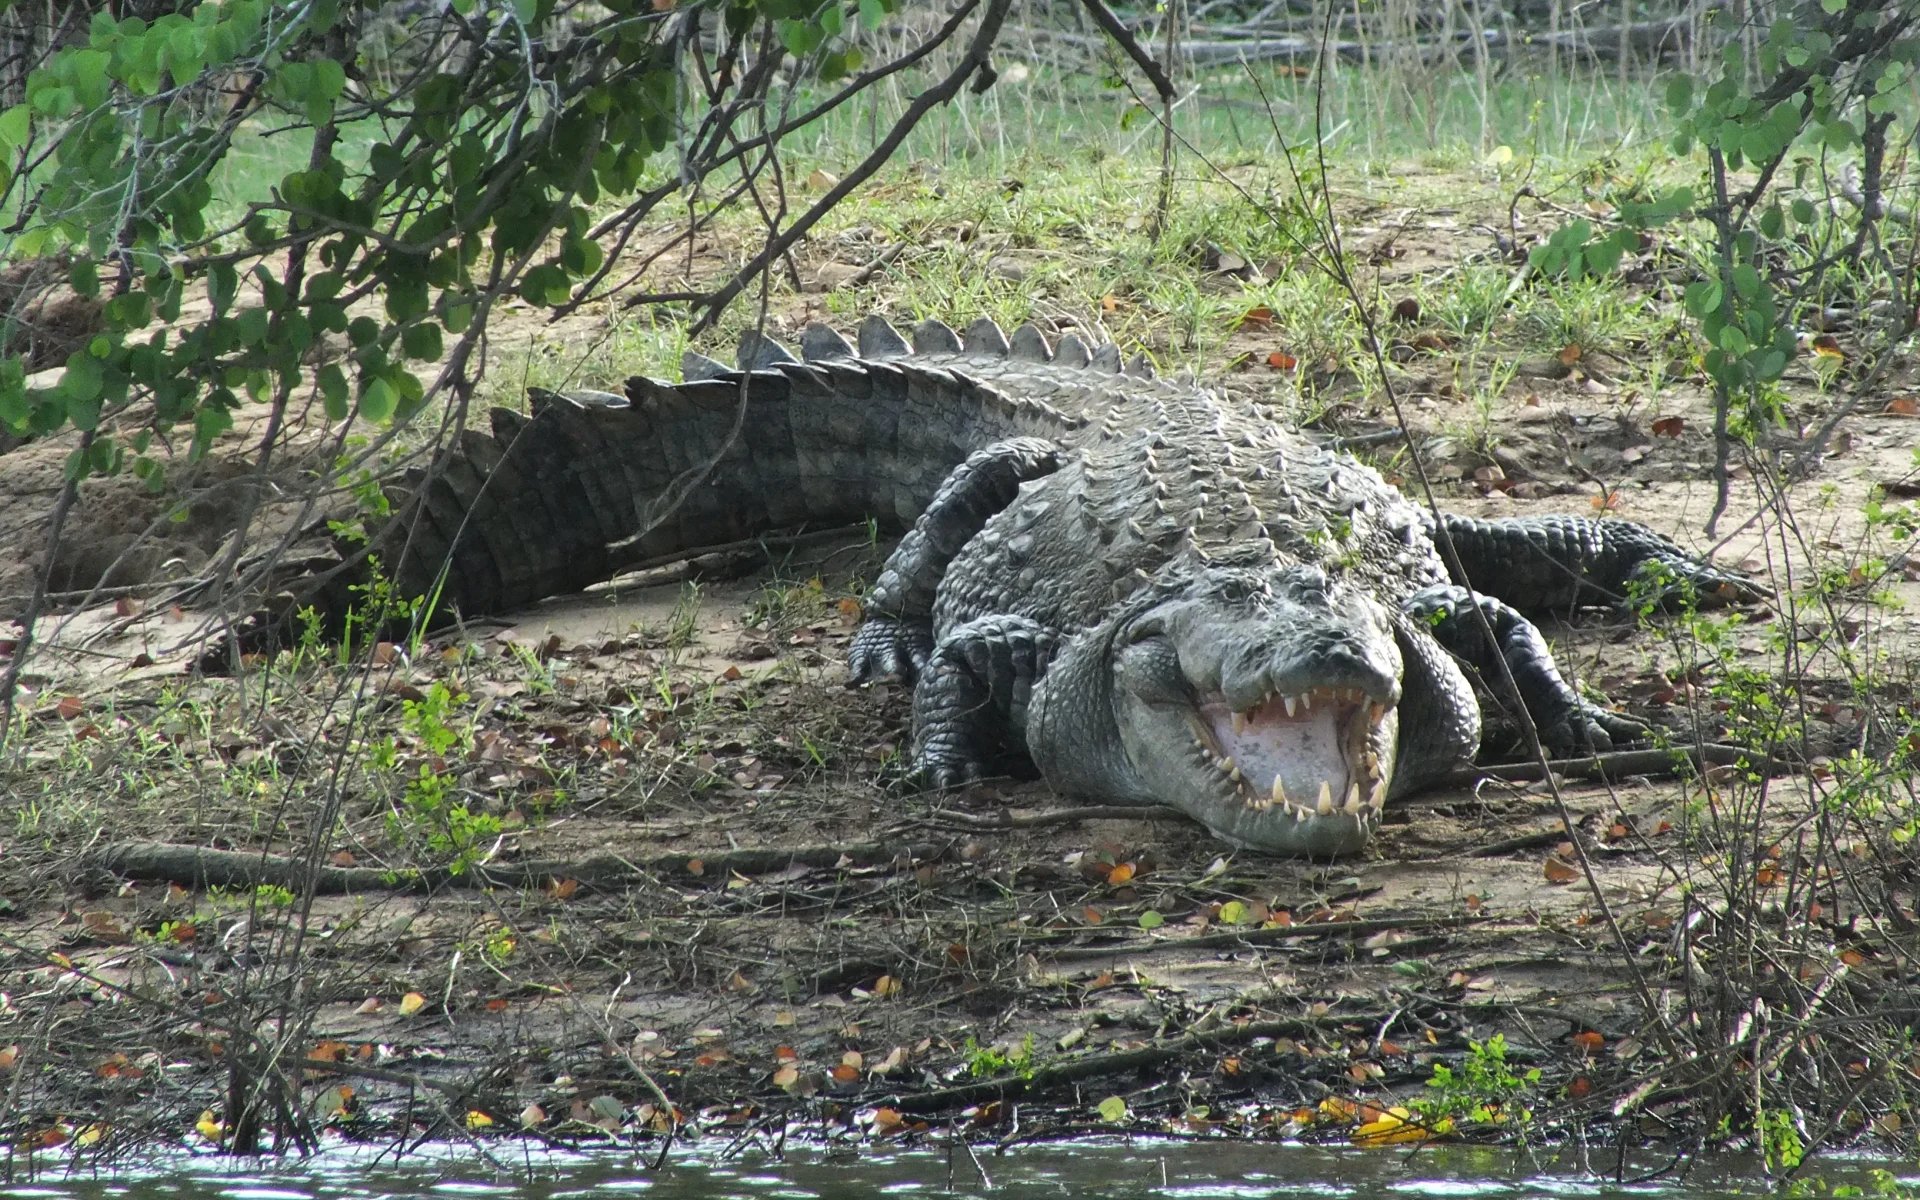 A crocodile in Gal Oya National Park.